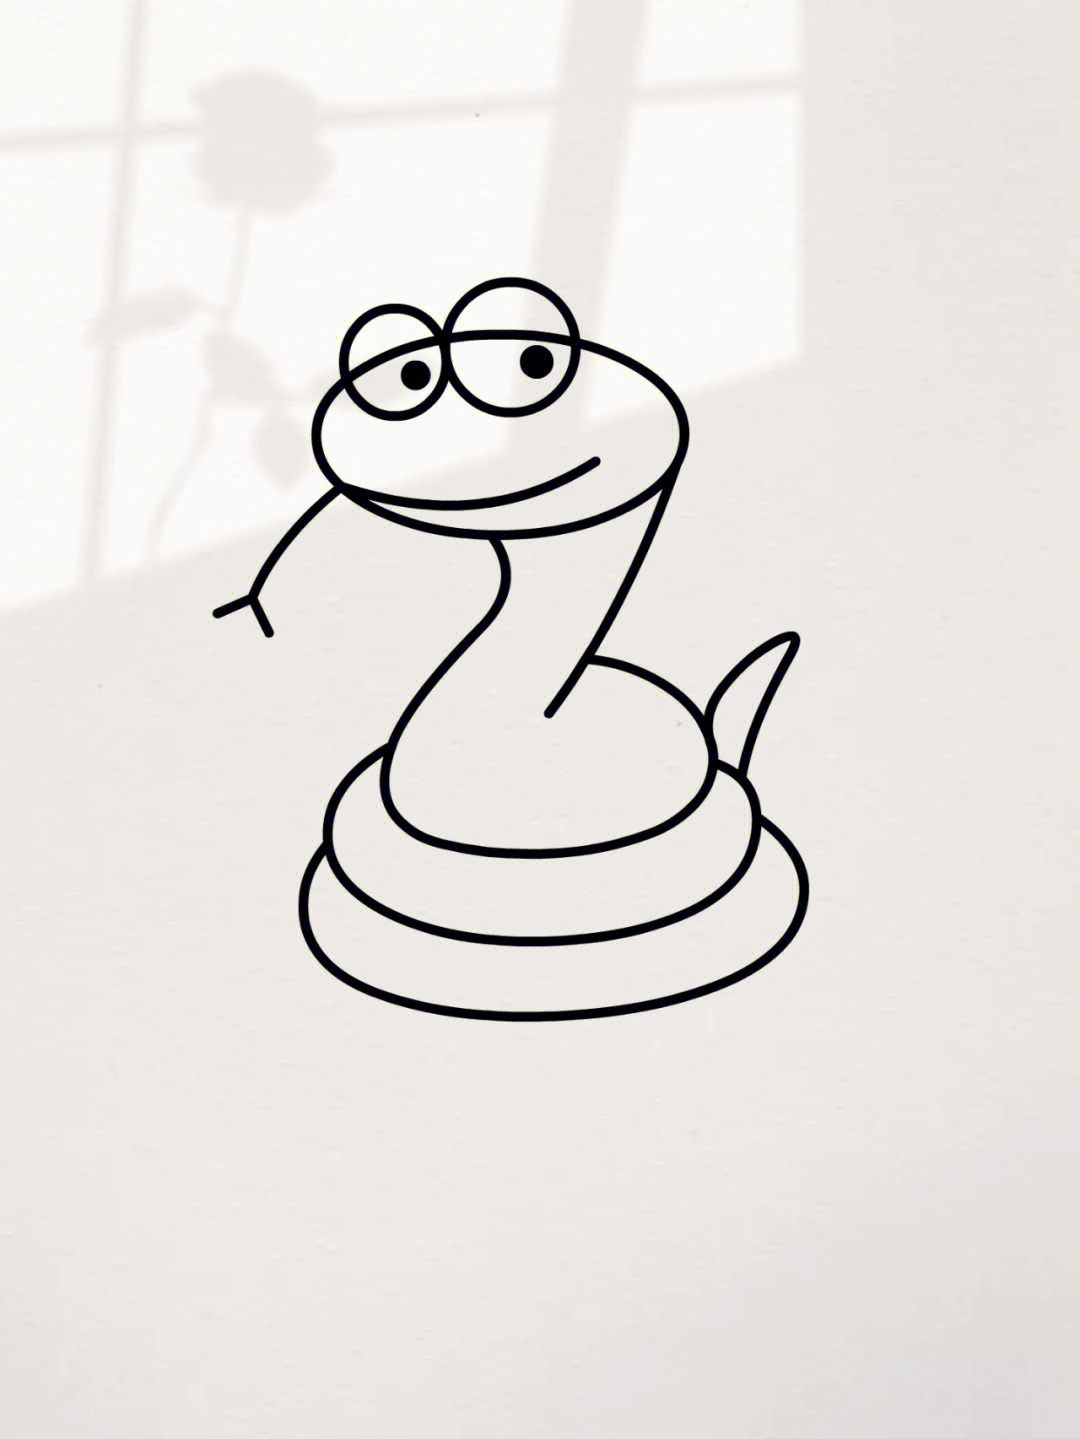 蛇简笔画可爱动物图片